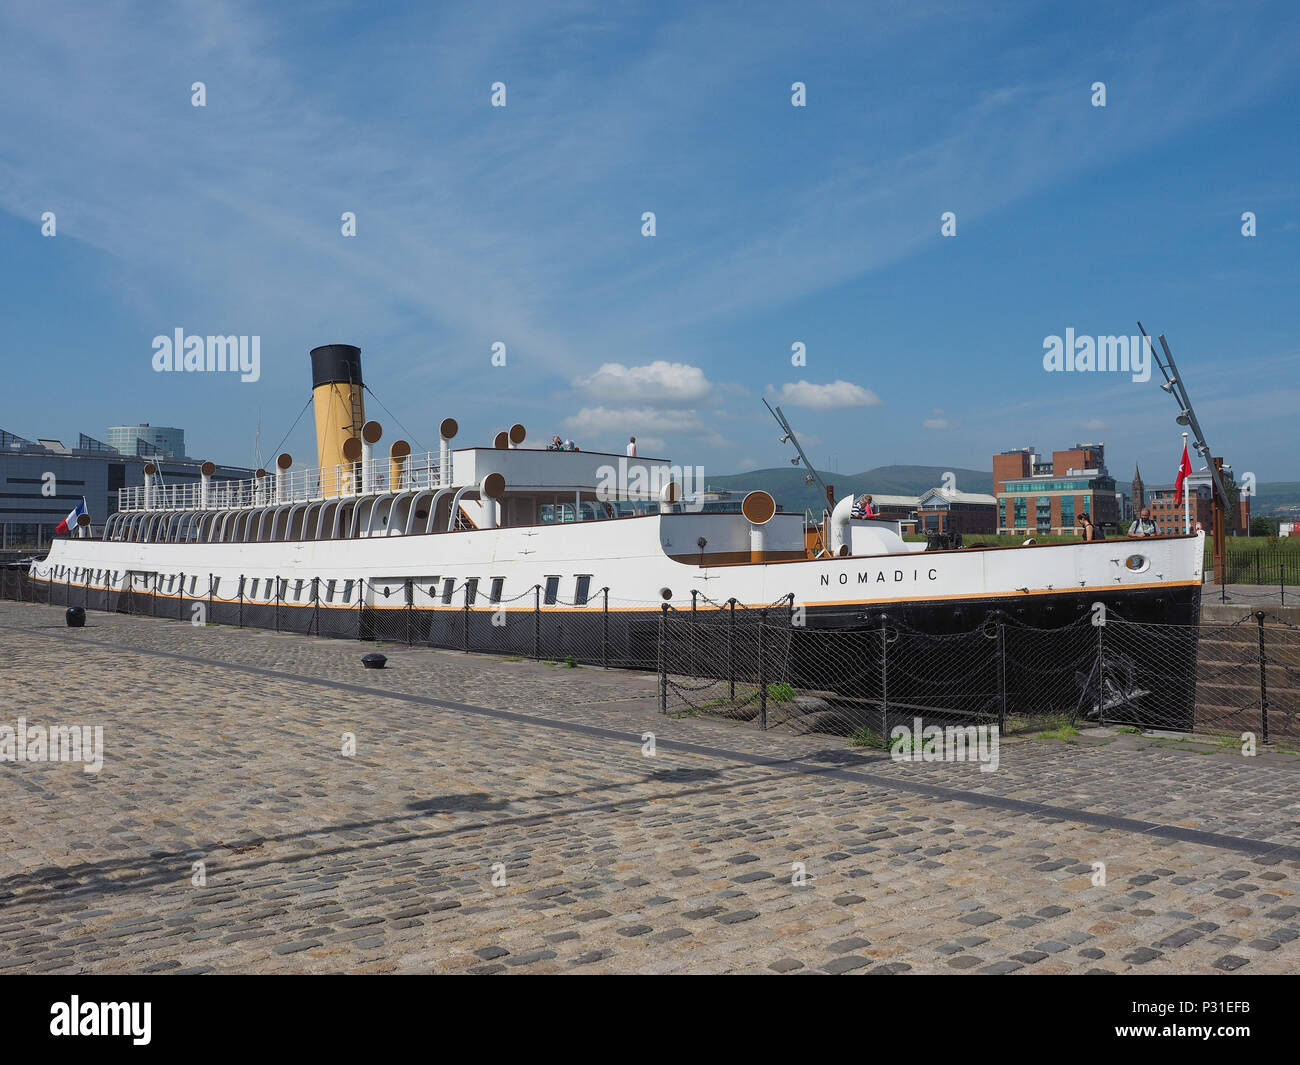 BELFAST, UK - CIRCA JUNE 2018: SS Nomadic tender ship of the White Star ...